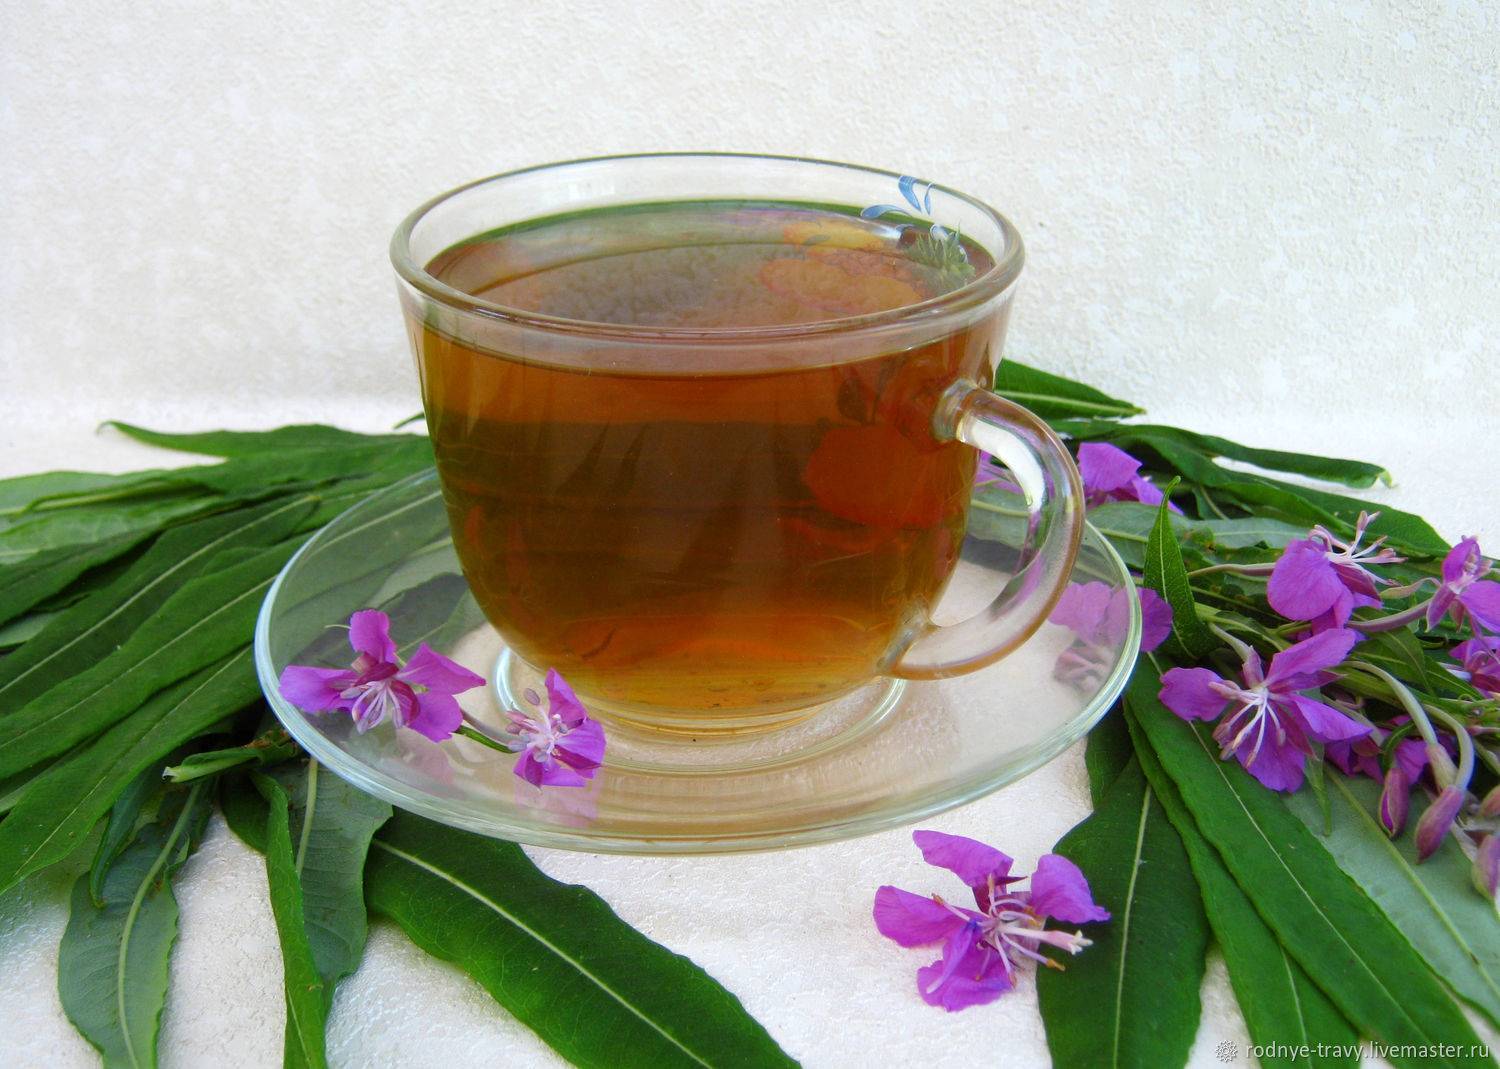 Чем полезен иван-чай для мужчин и как его употреблять, влияние на потенцию